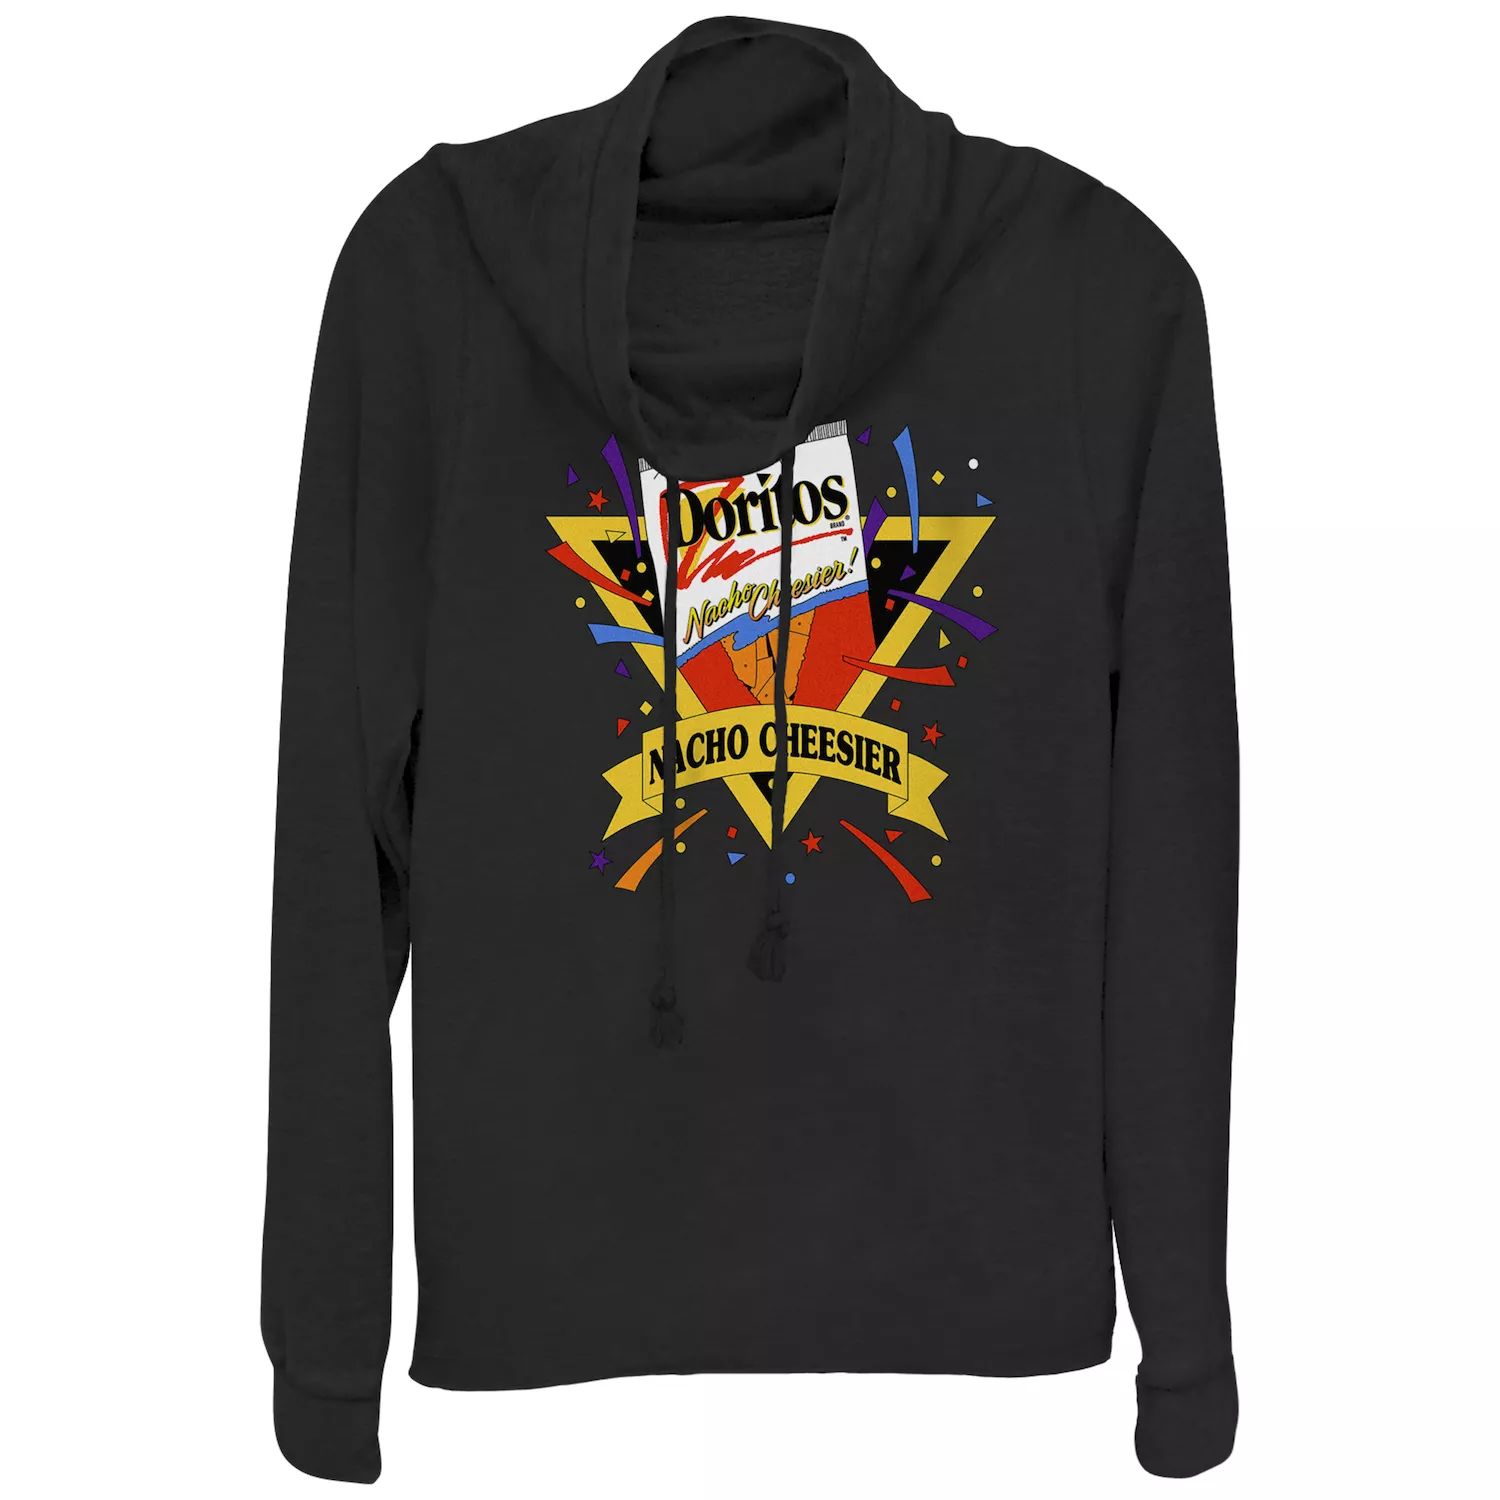 Пуловер с воротником-хомутом и винтажным логотипом Doritos Nacho Cheesier для юниоров Doritos